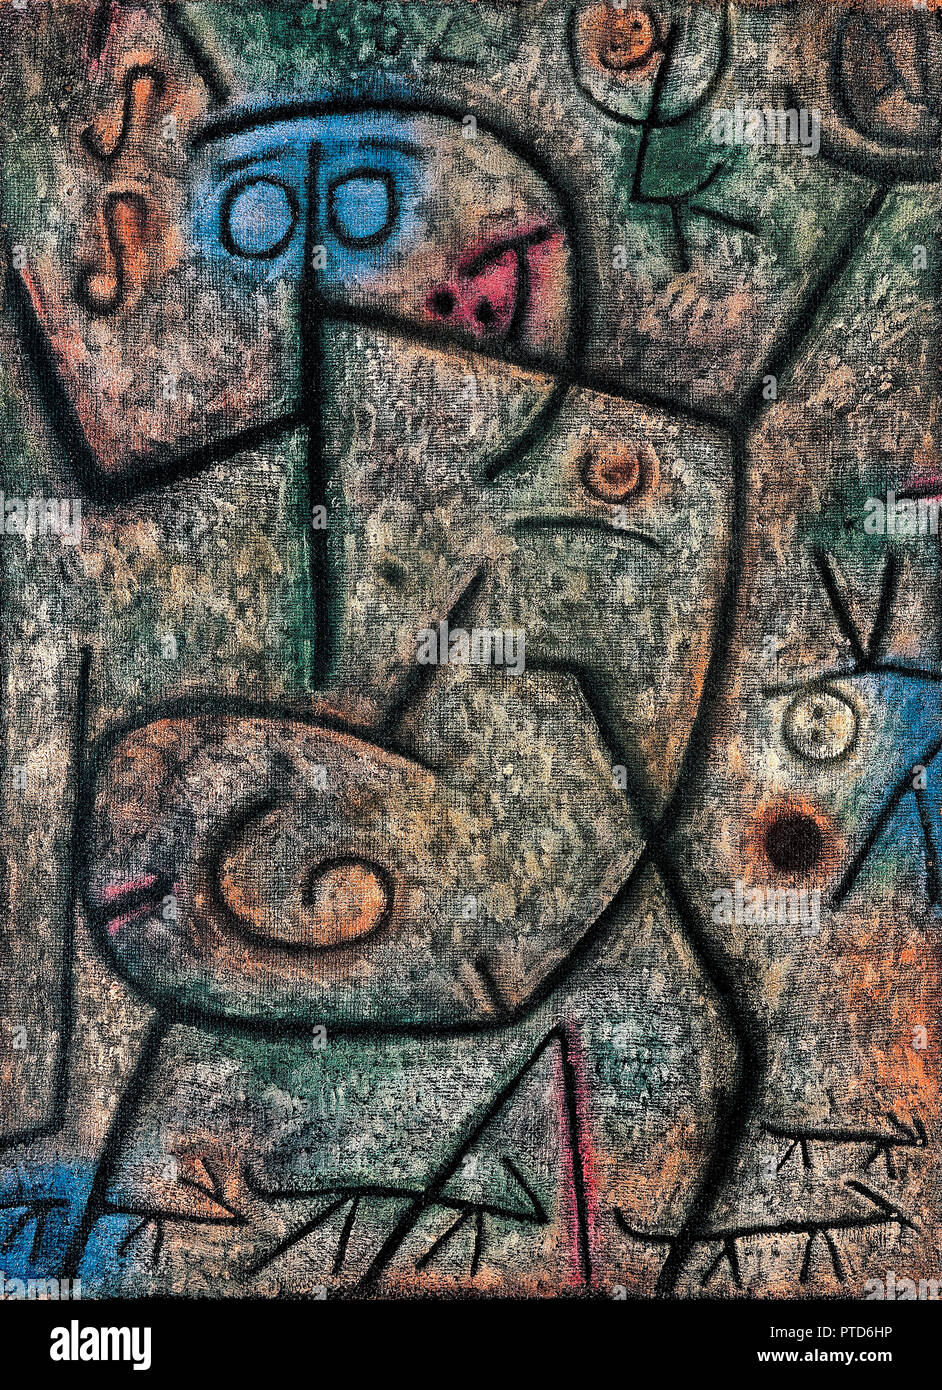 Paul Klee, Oh! Diese Gerüchte! 1939 Öl auf Leinwand, Fondation Beyeler, Riehen, Schweiz. Stockfoto